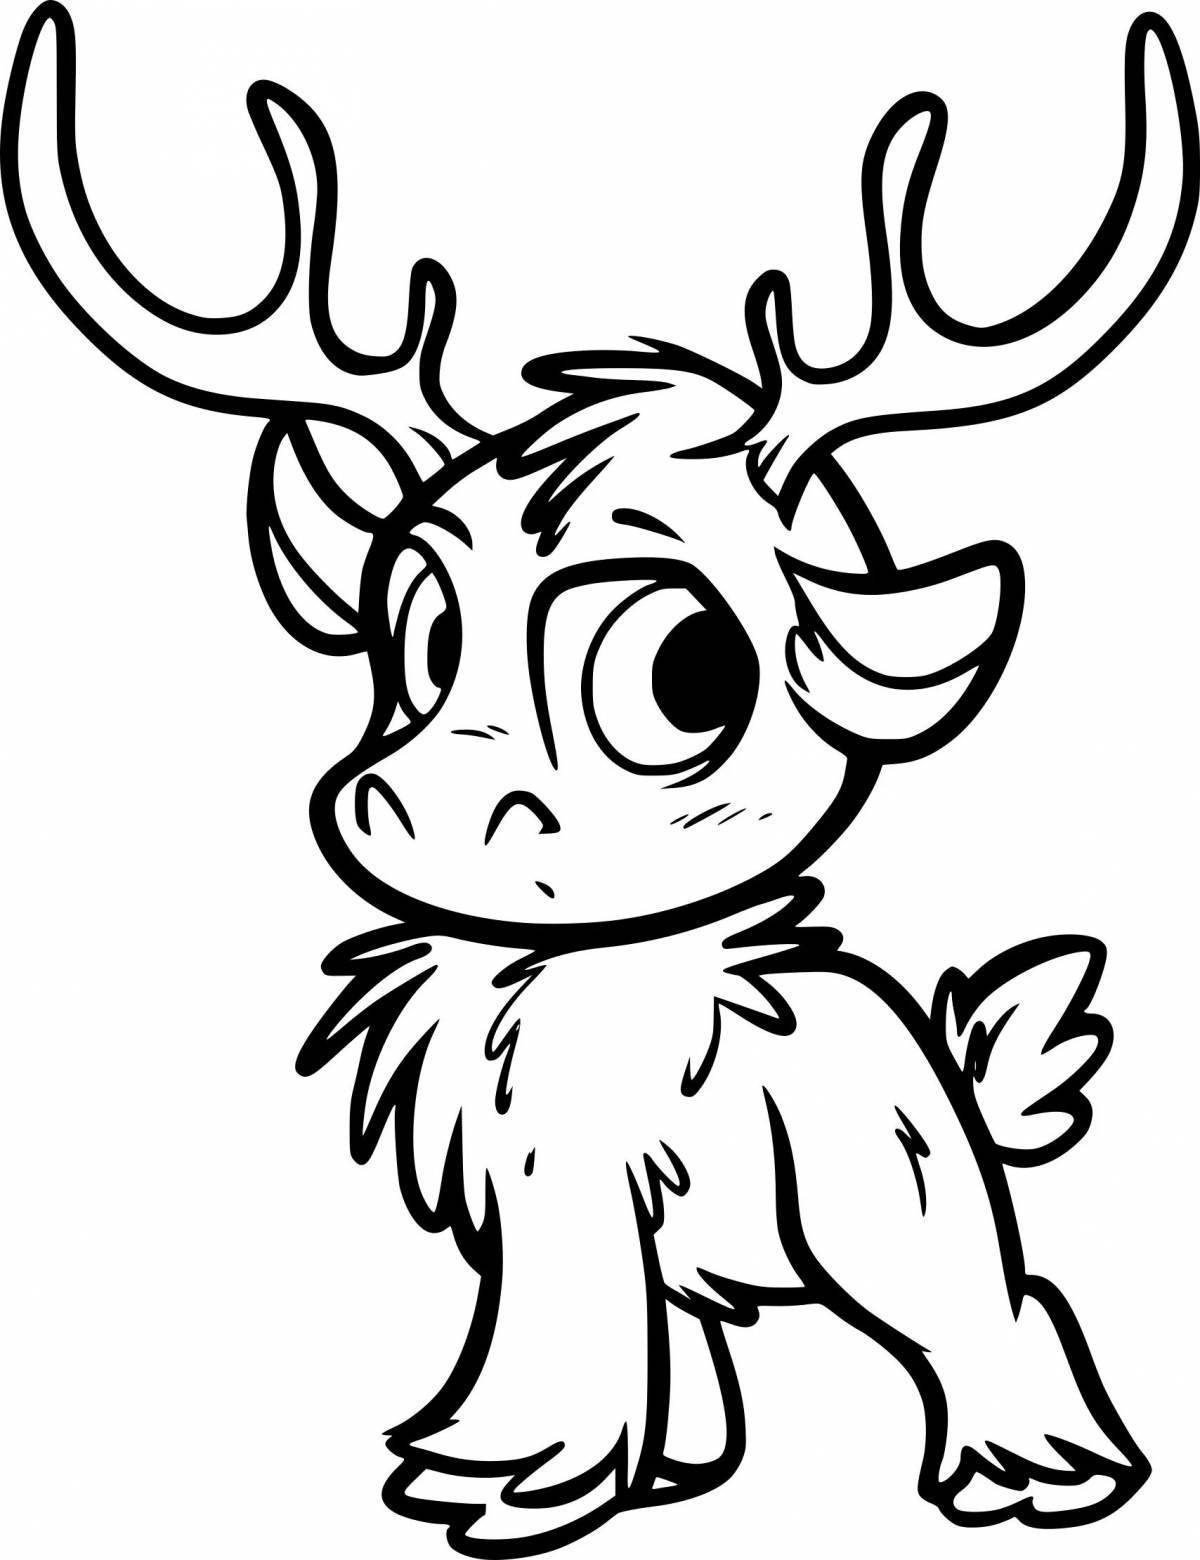 Cheerful deer-coloring